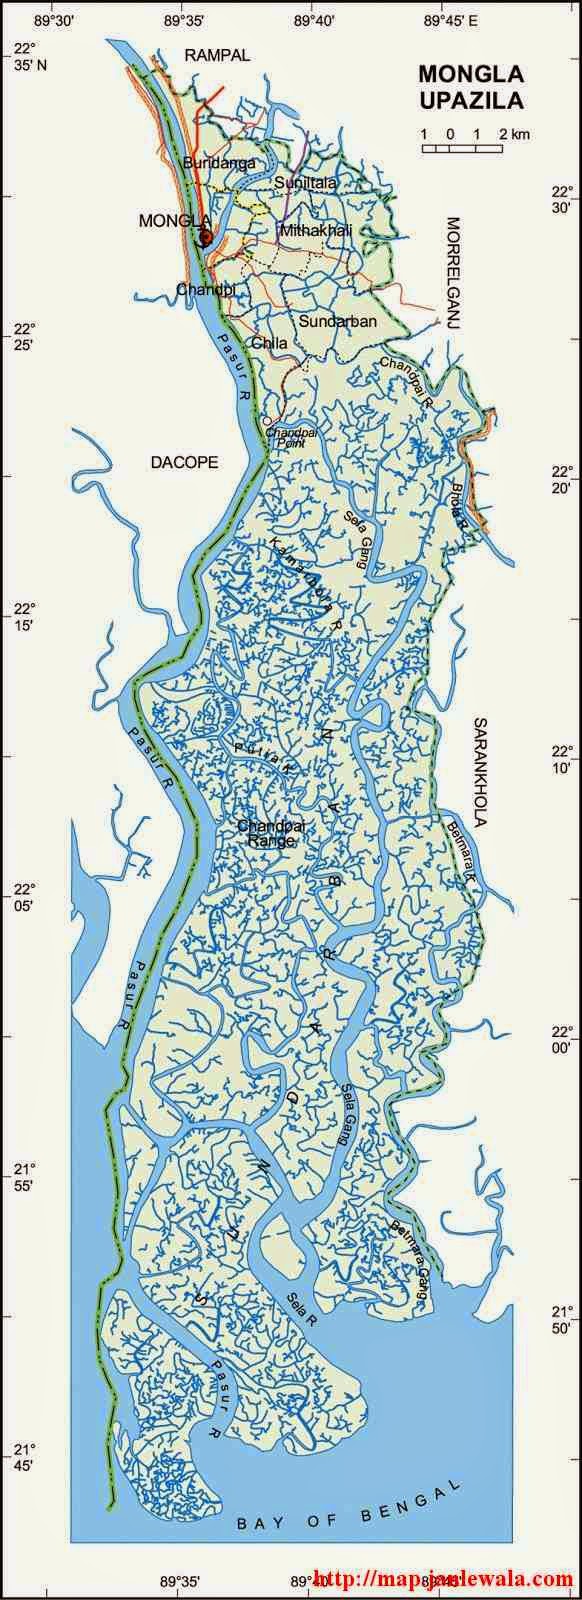 mongla upazila map of bangladesh